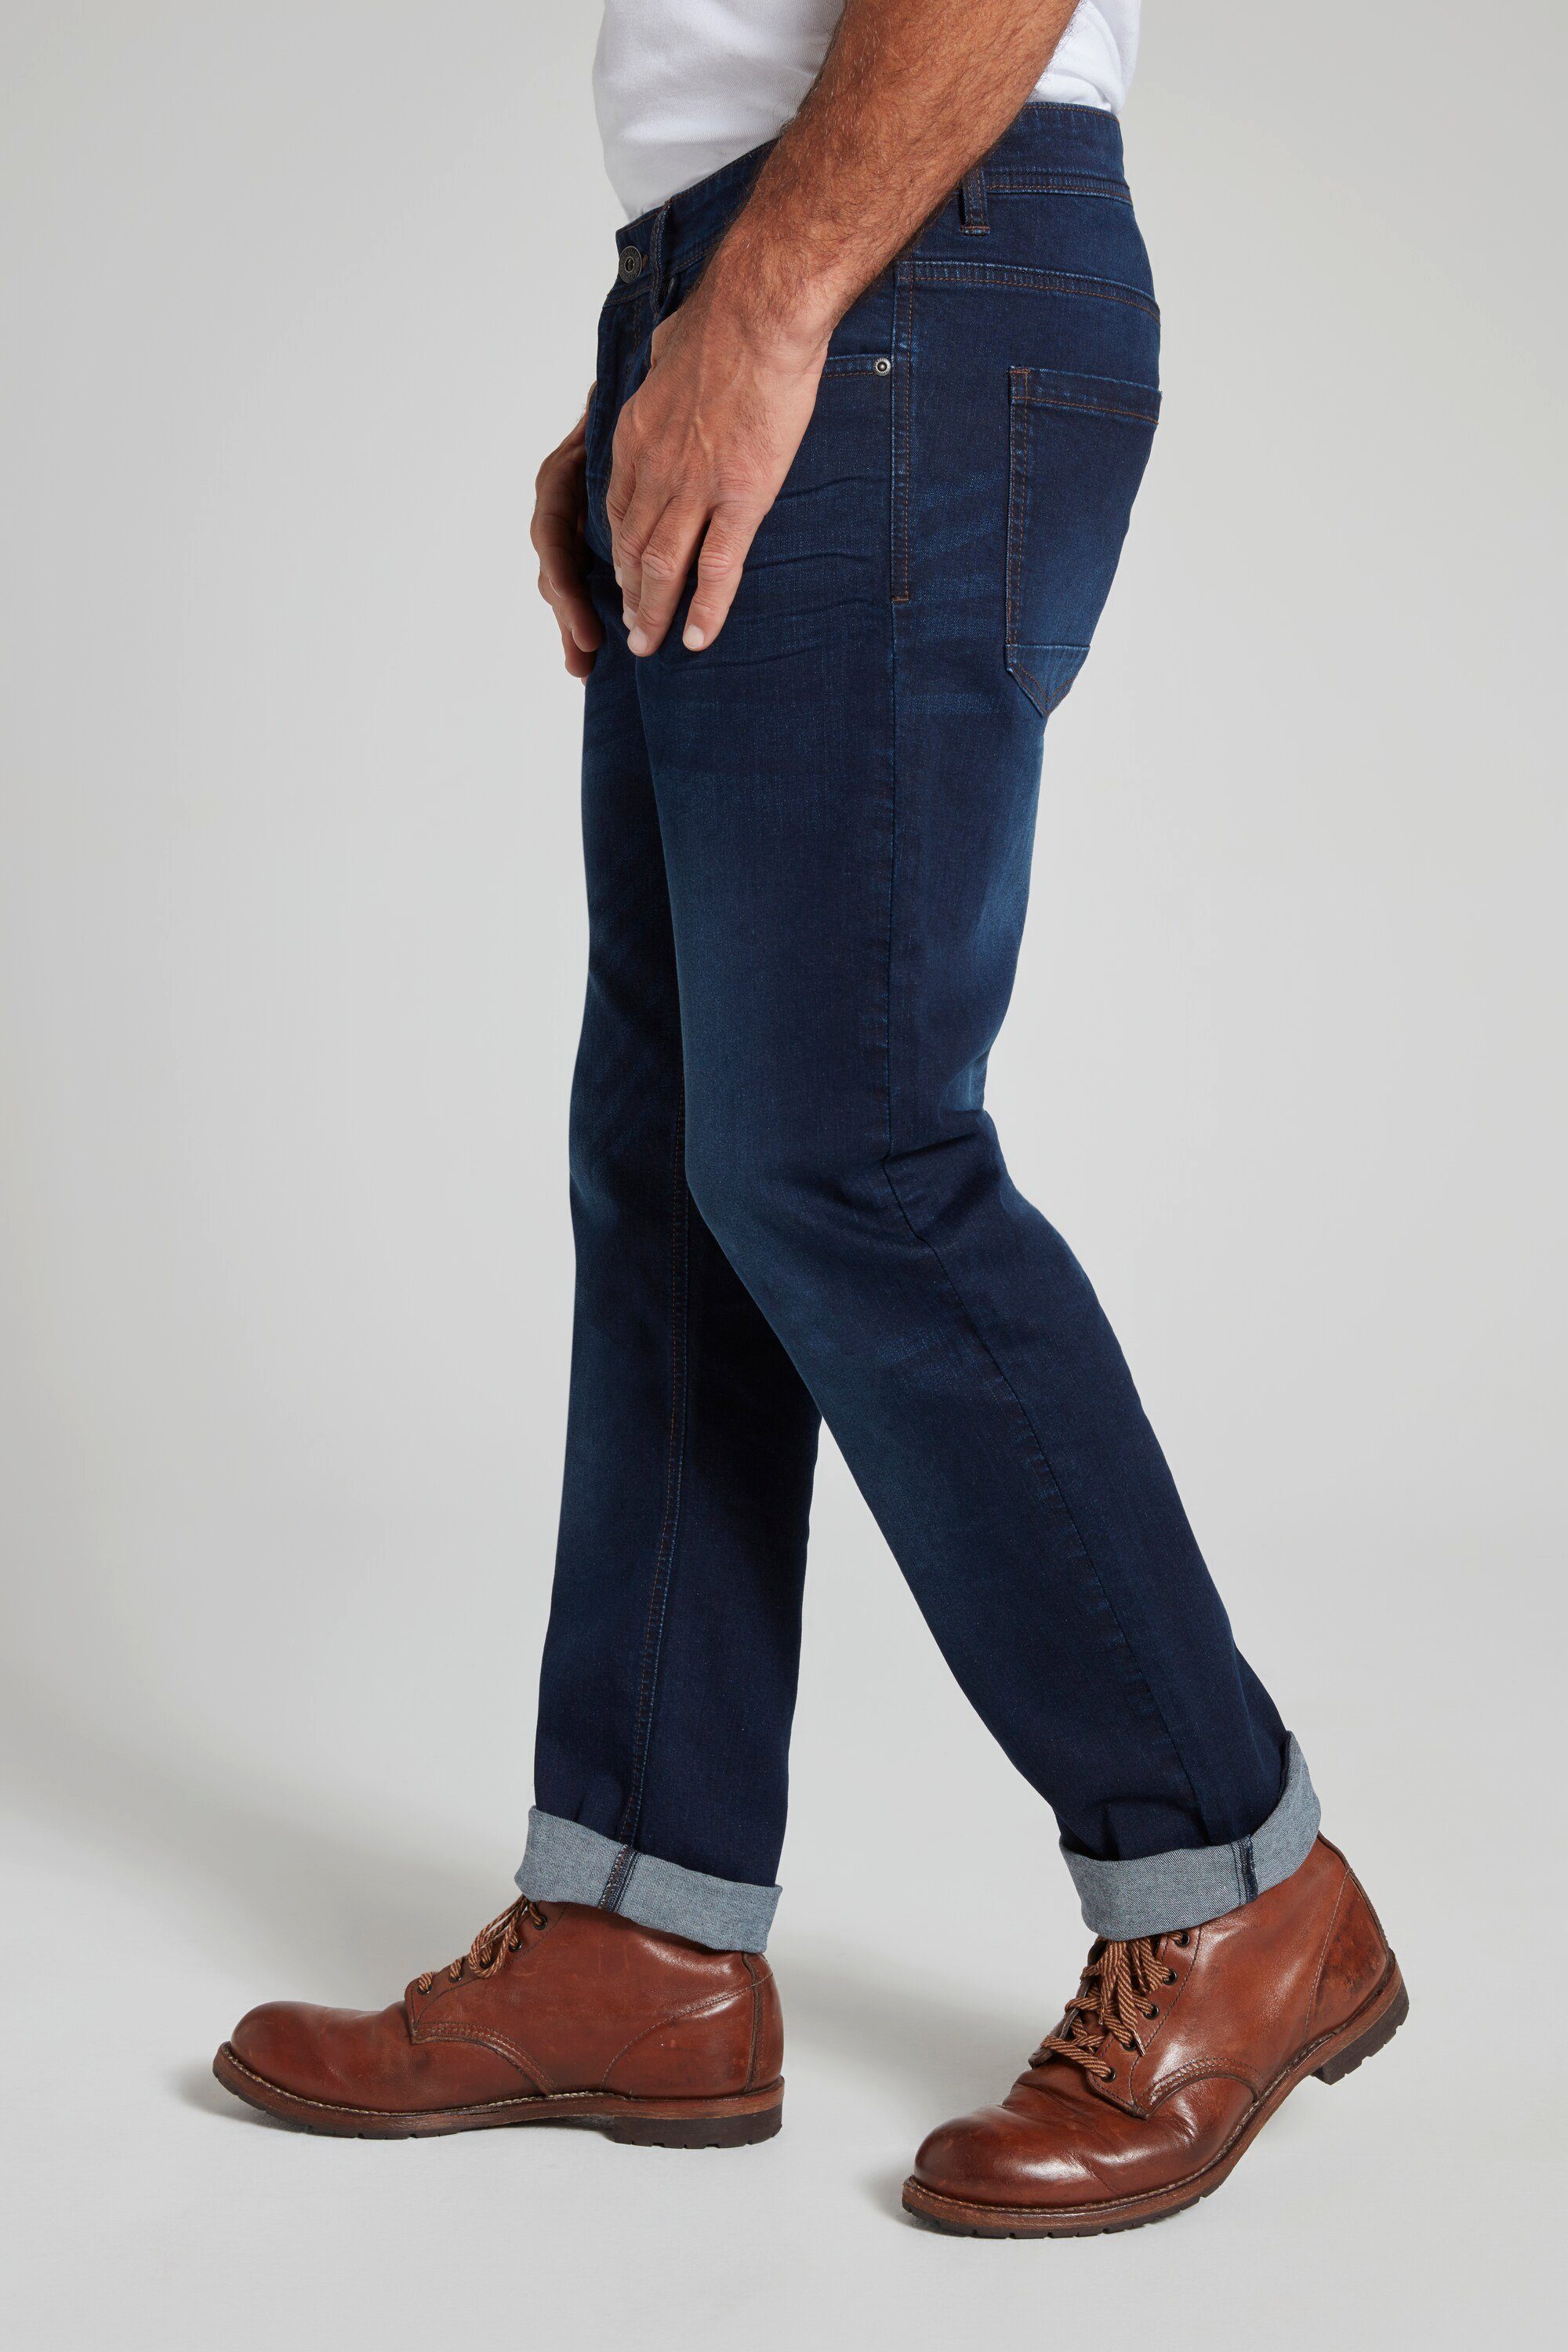 Fit Straight bis dark JP1880 Gr. FLEXNAMIC® blue 72/36 5-Pocket-Jeans denim Jeans